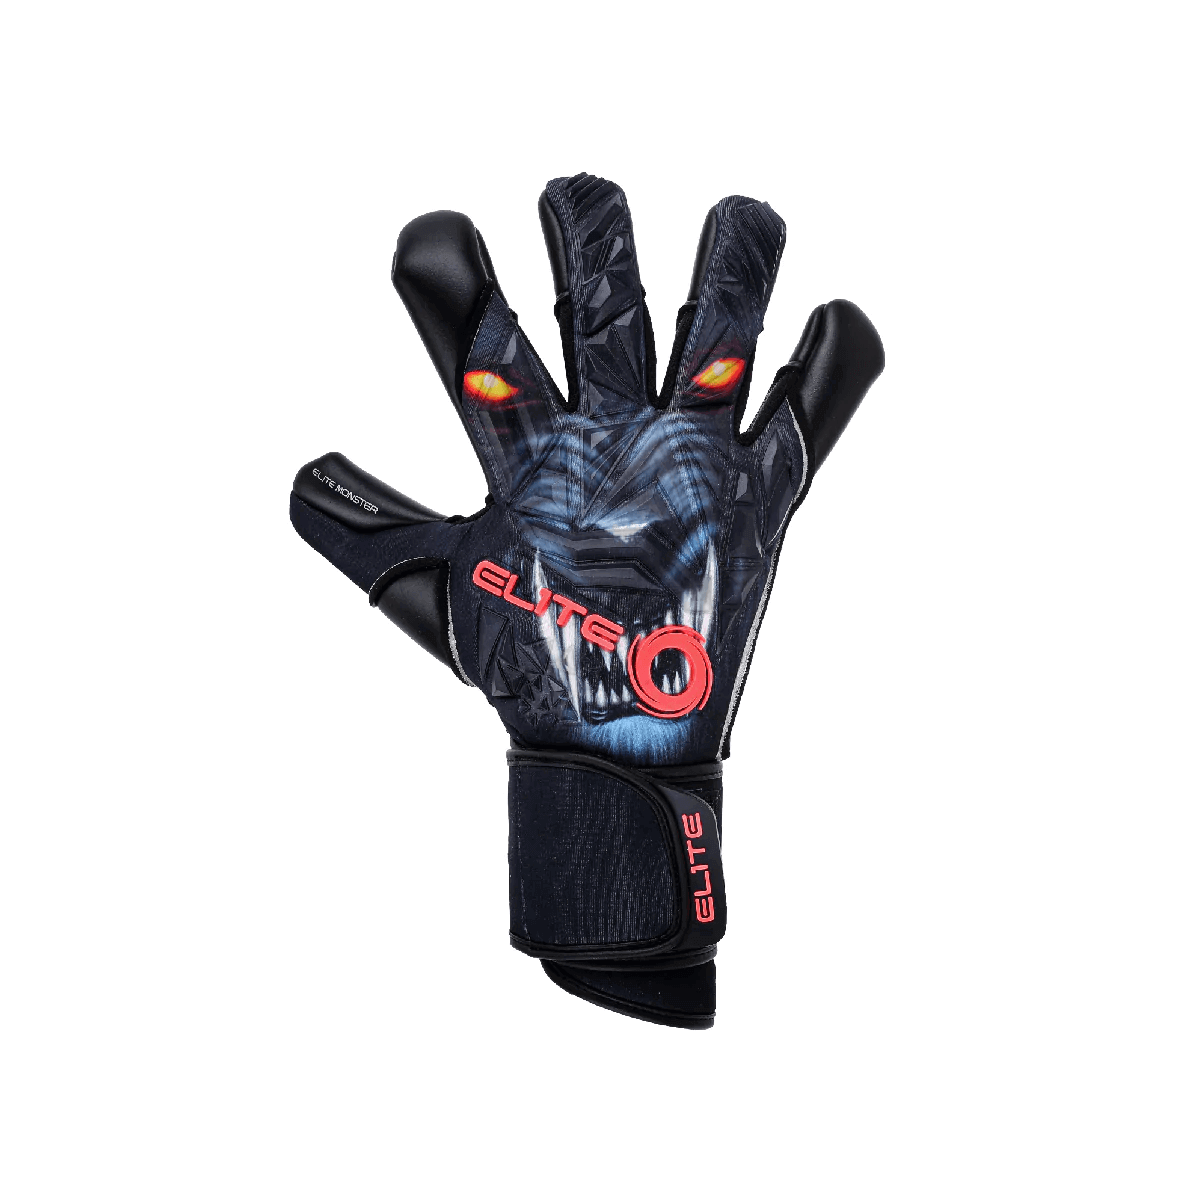 Elite Sport 2022 Monster Goalkeeper Glove - Multicolor (Single - Outer)